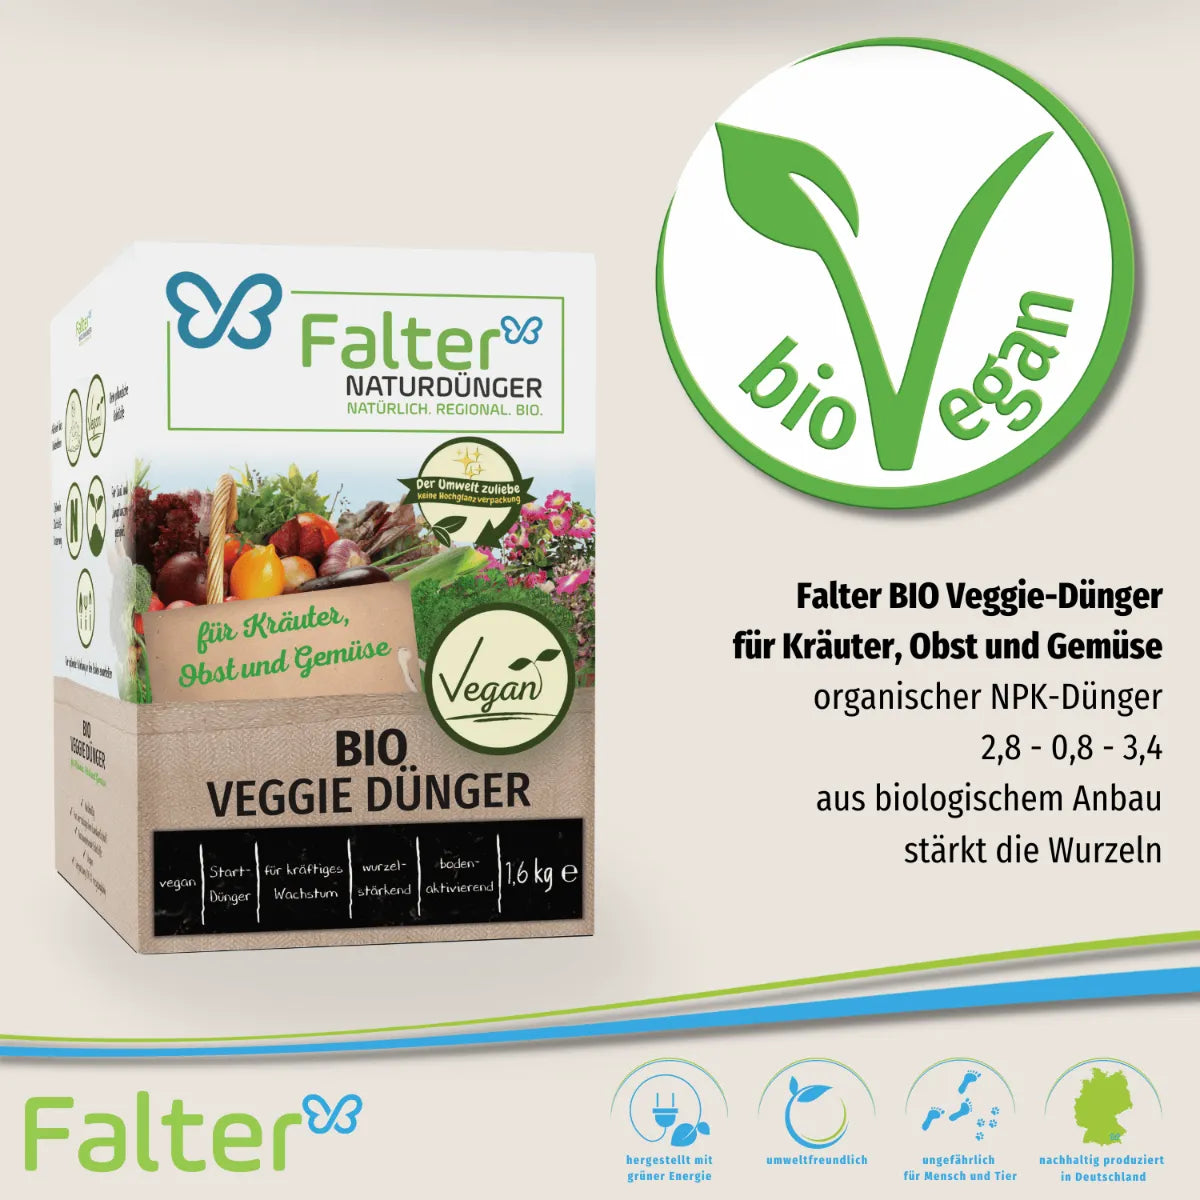 Falter BIO Veggie Dünger für Kräuter Obst und Gemüse 1,6 kg